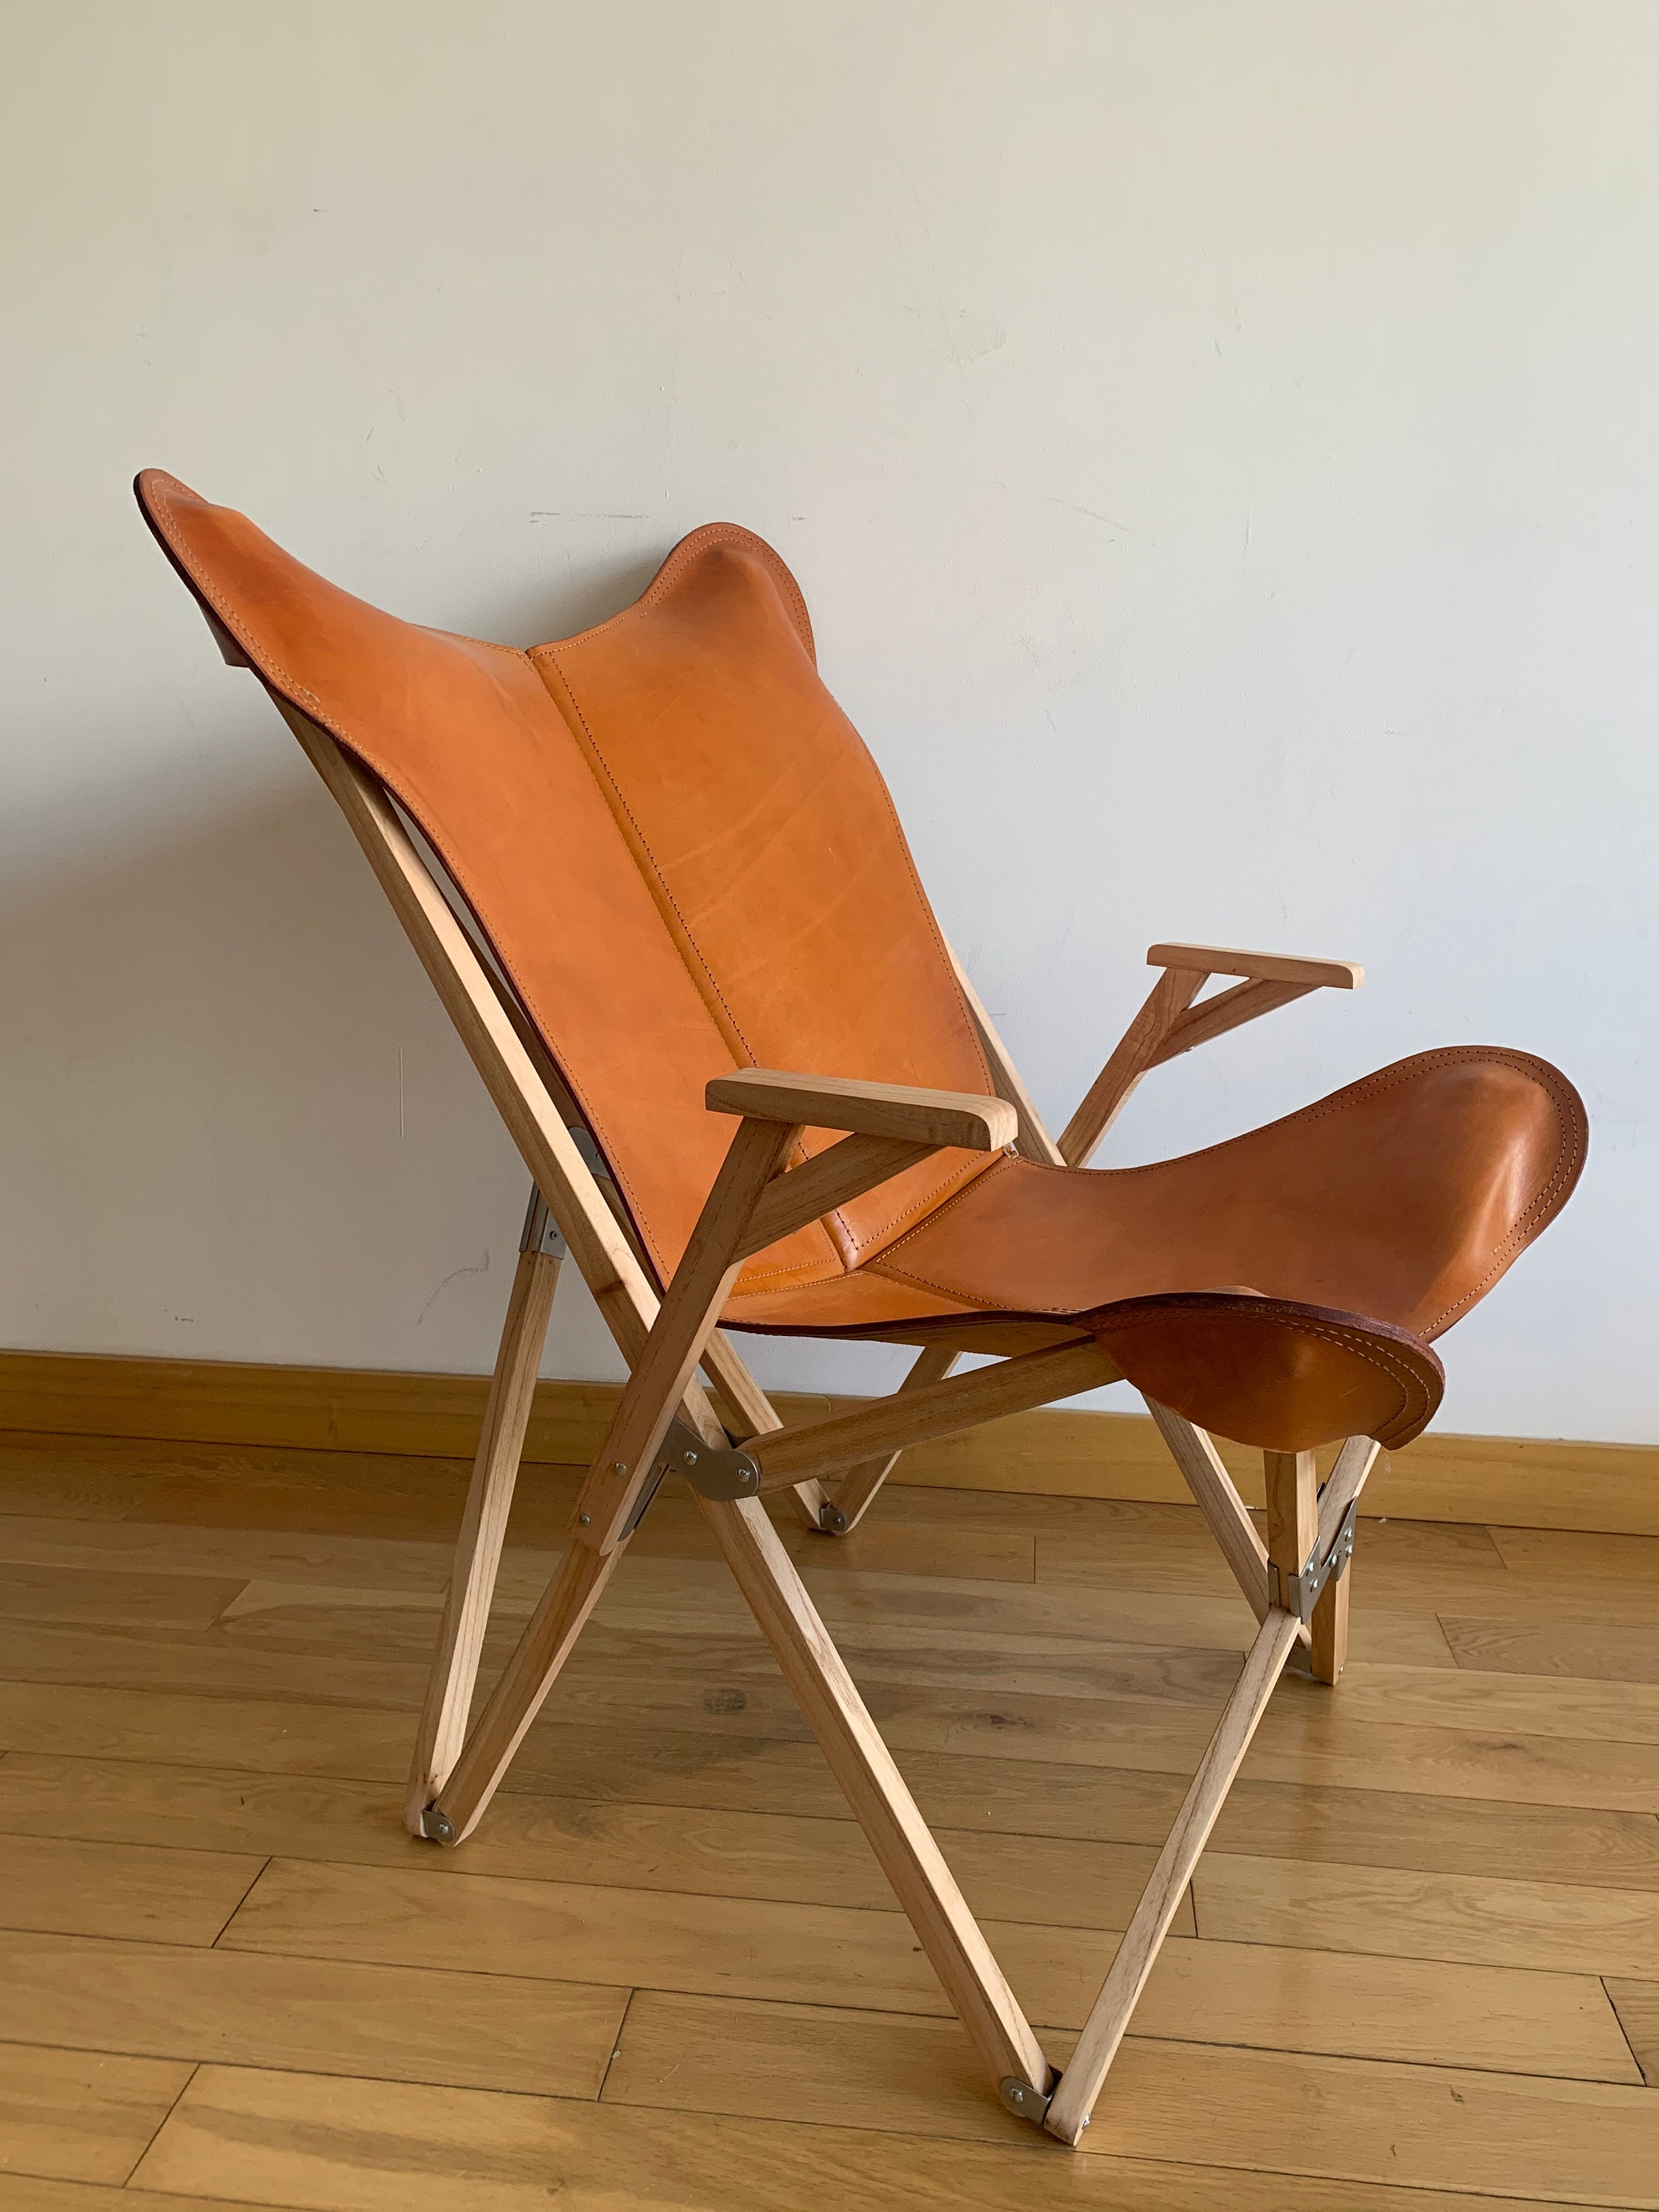 Atticus ongeluk Onhandig Vlinderstoel BKF fauteuil plantaardig gelooid leer houten - Etsy Nederland